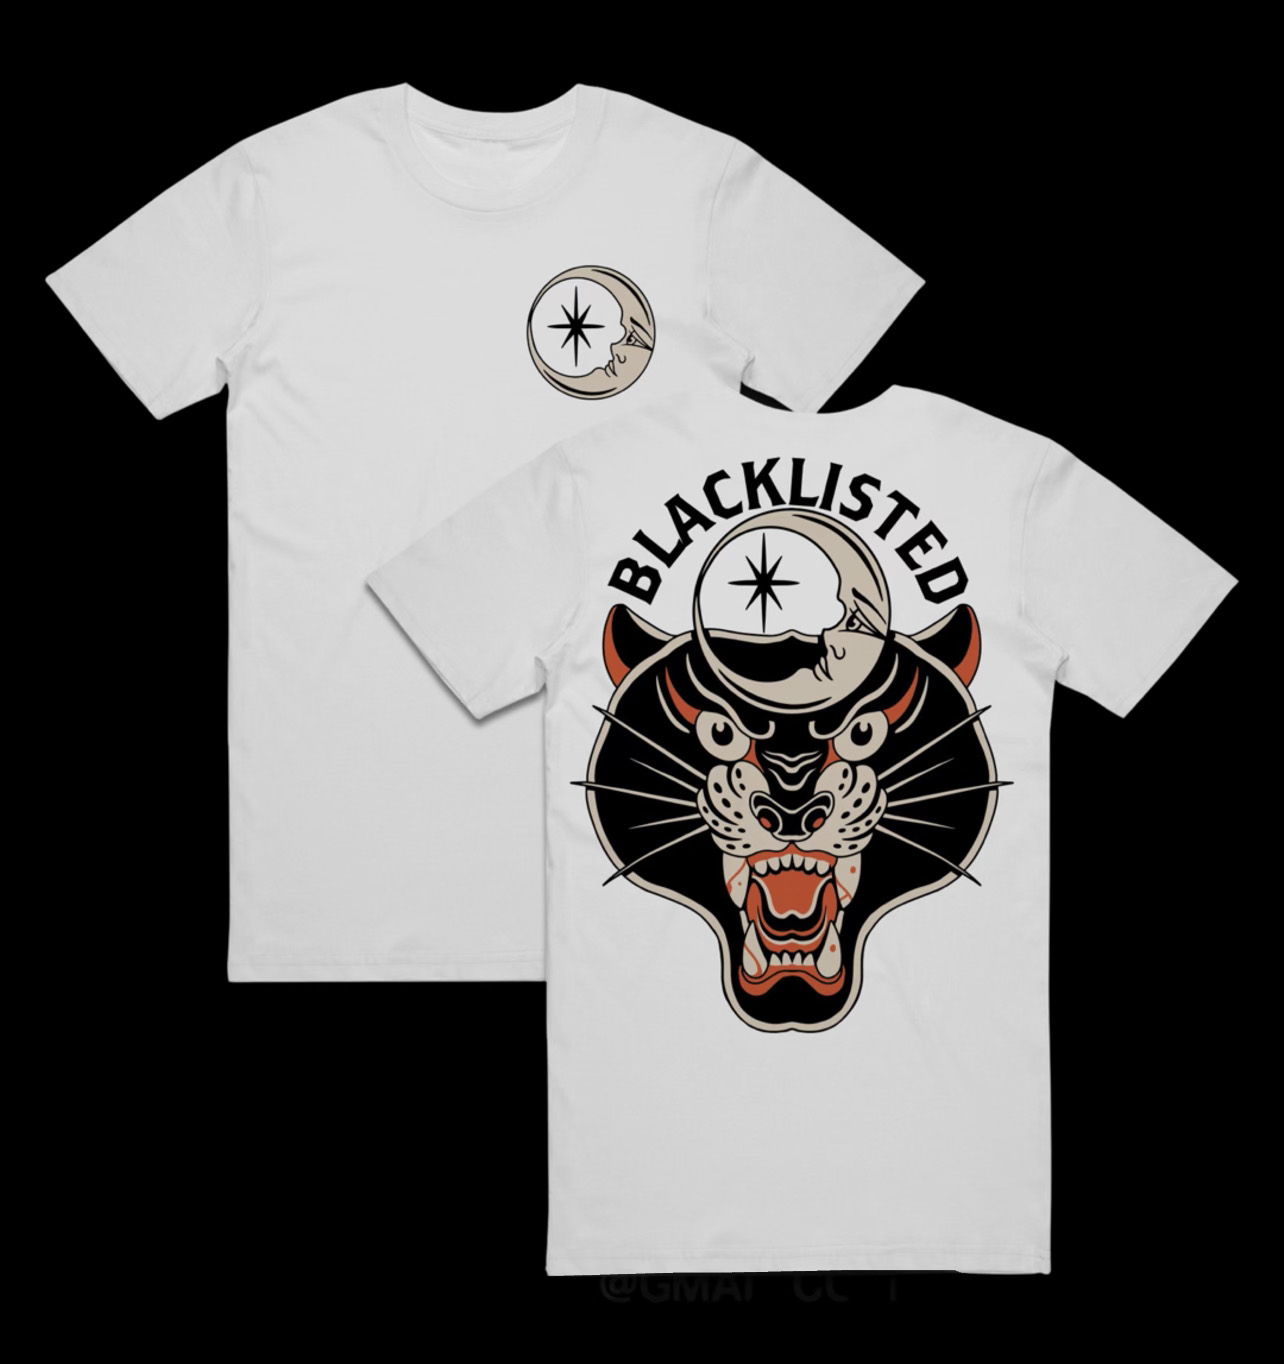 Blacklisted Tattoos Tshirts